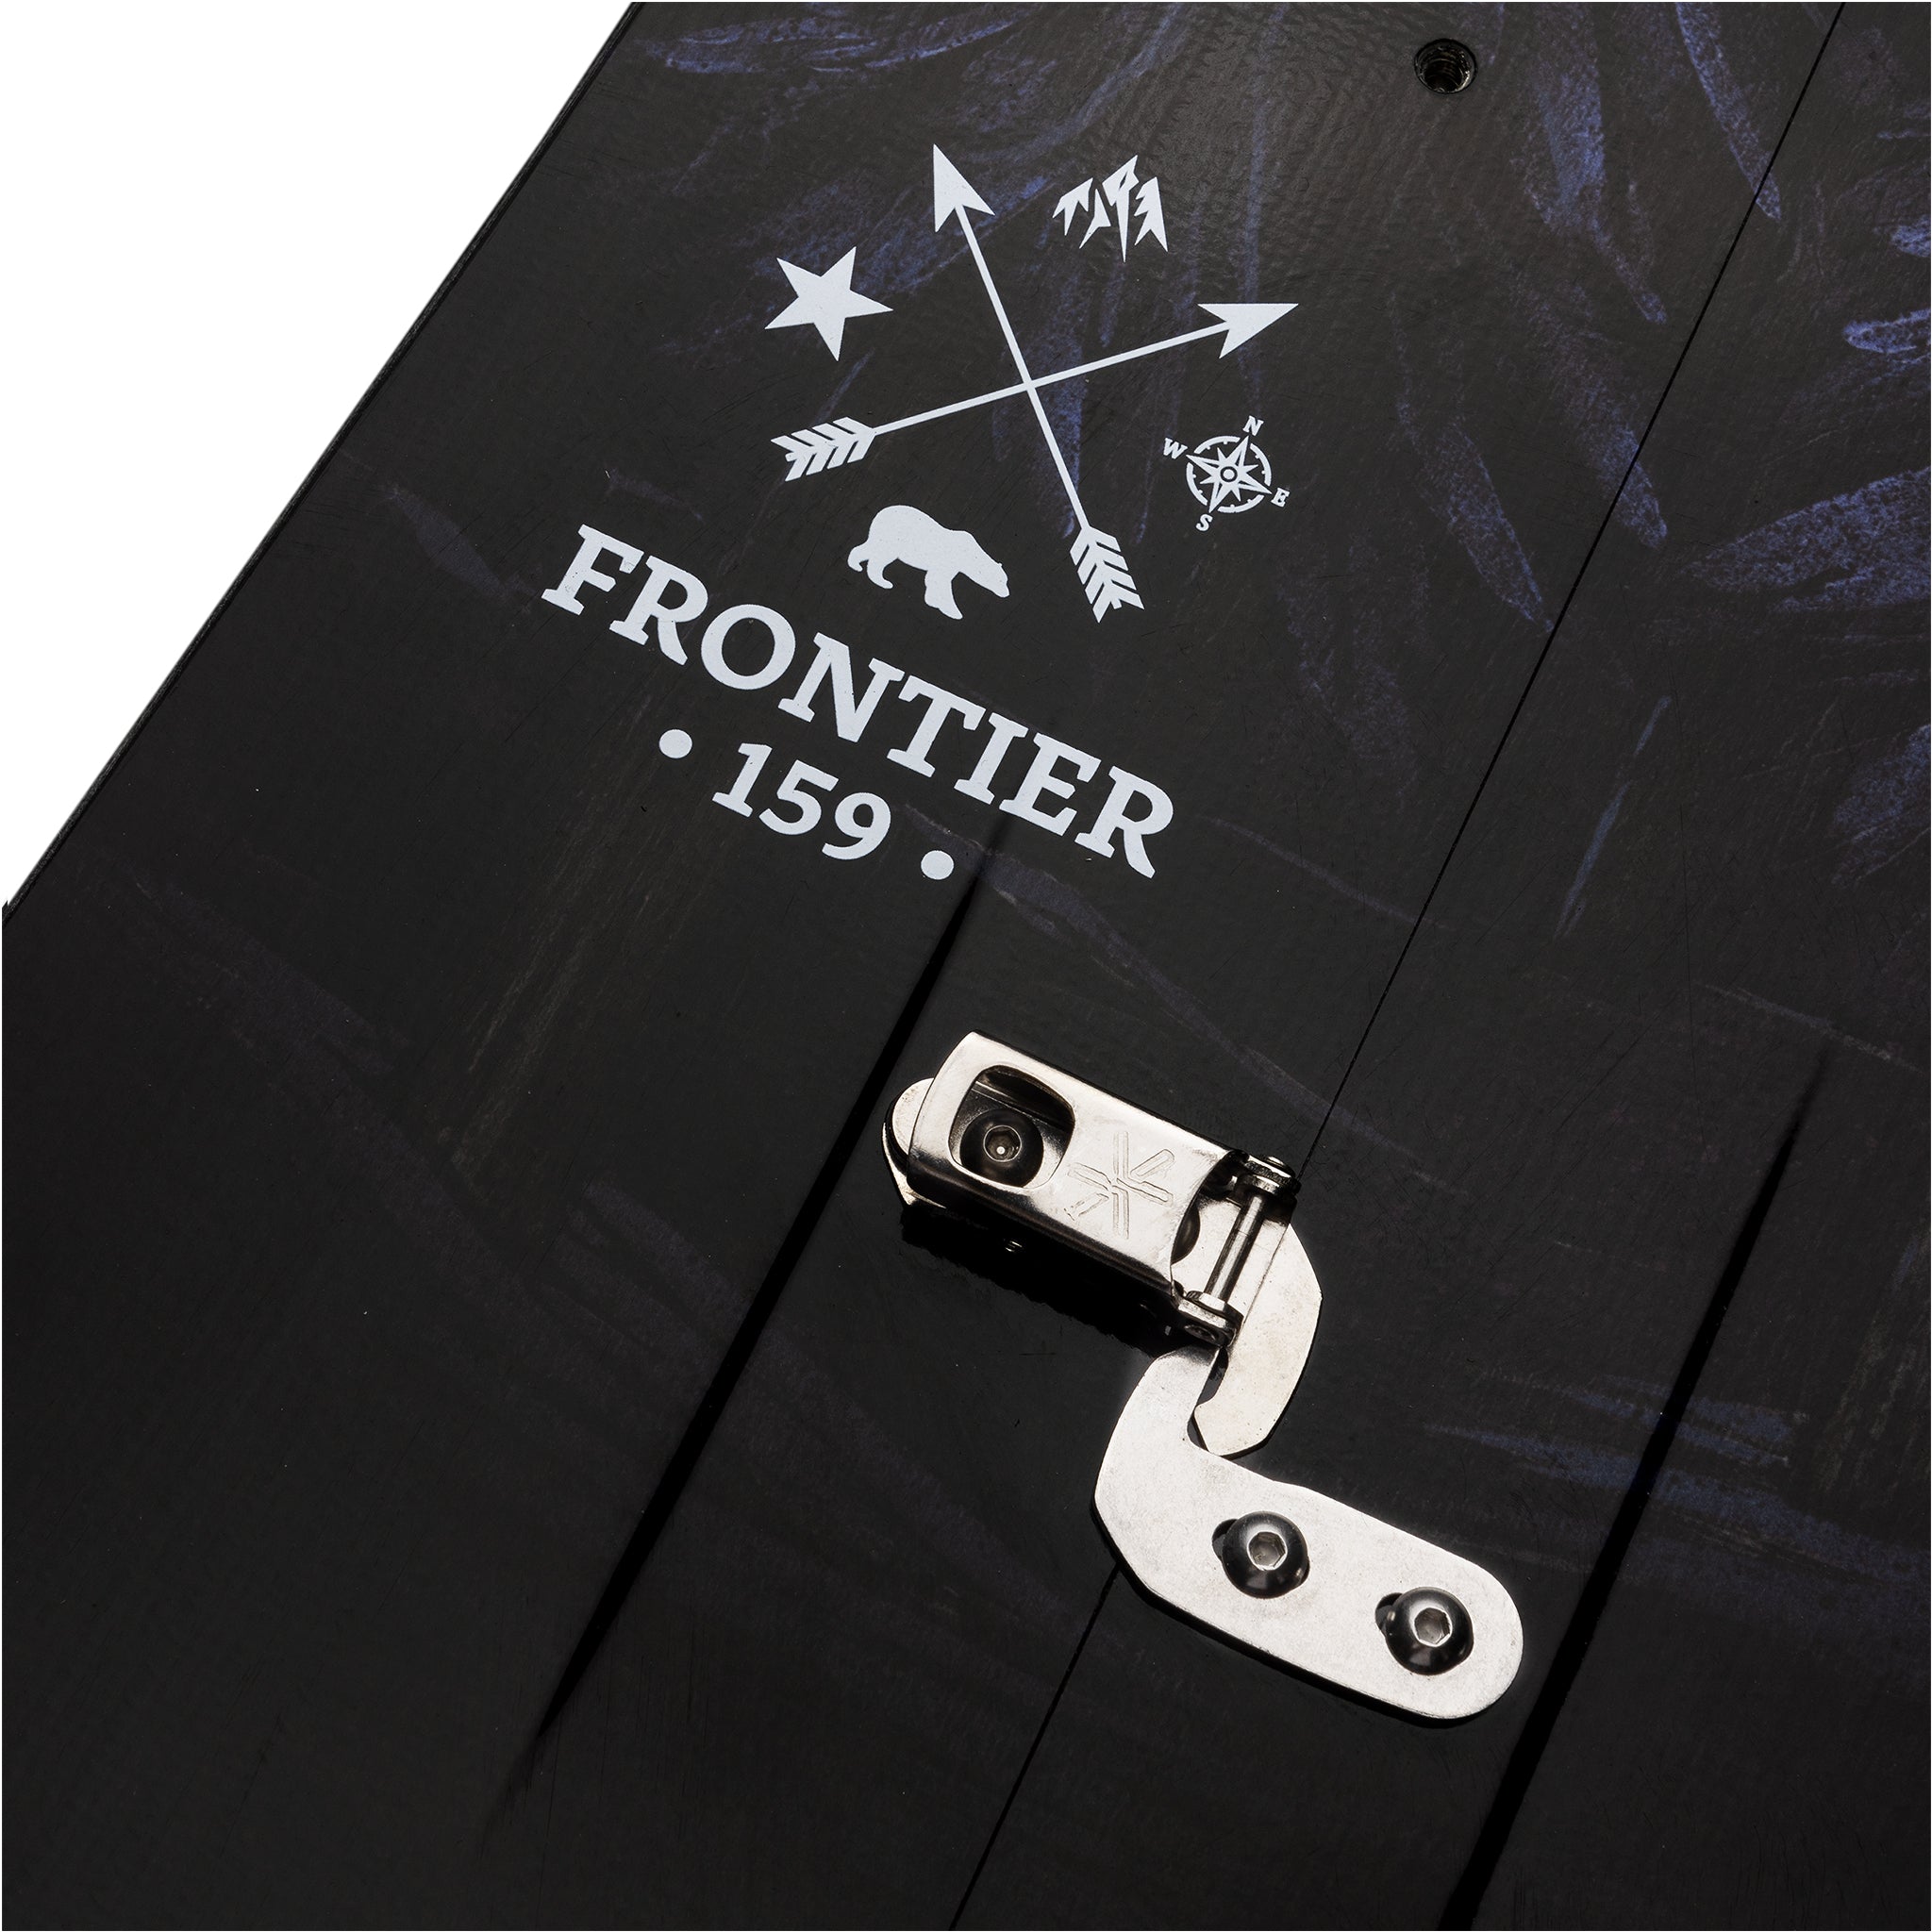 22/23 Frontier Splitboard